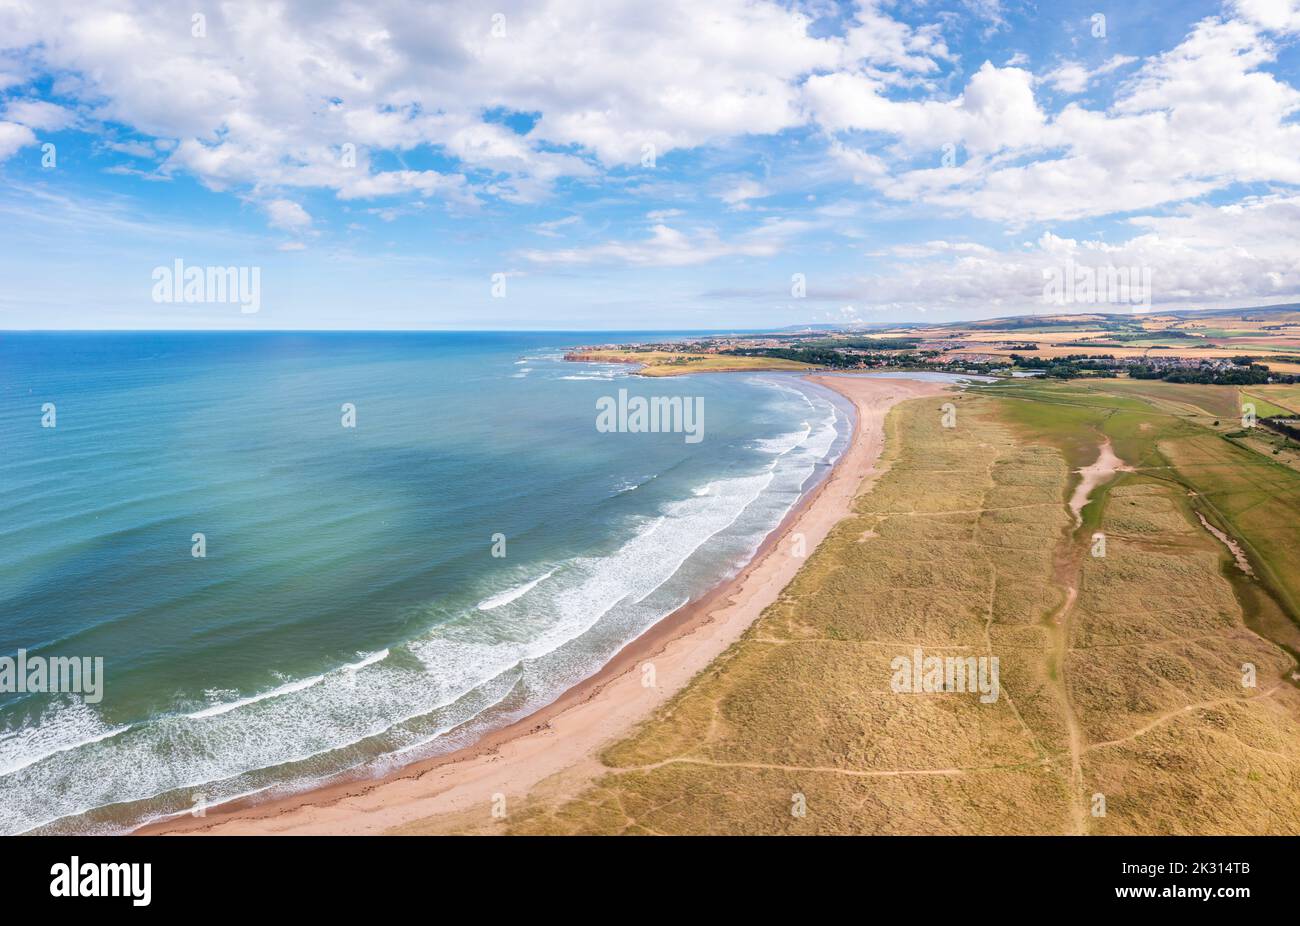 Royaume-Uni, Écosse, Dunbar, vue aérienne de la baie de Belhaven en été Banque D'Images